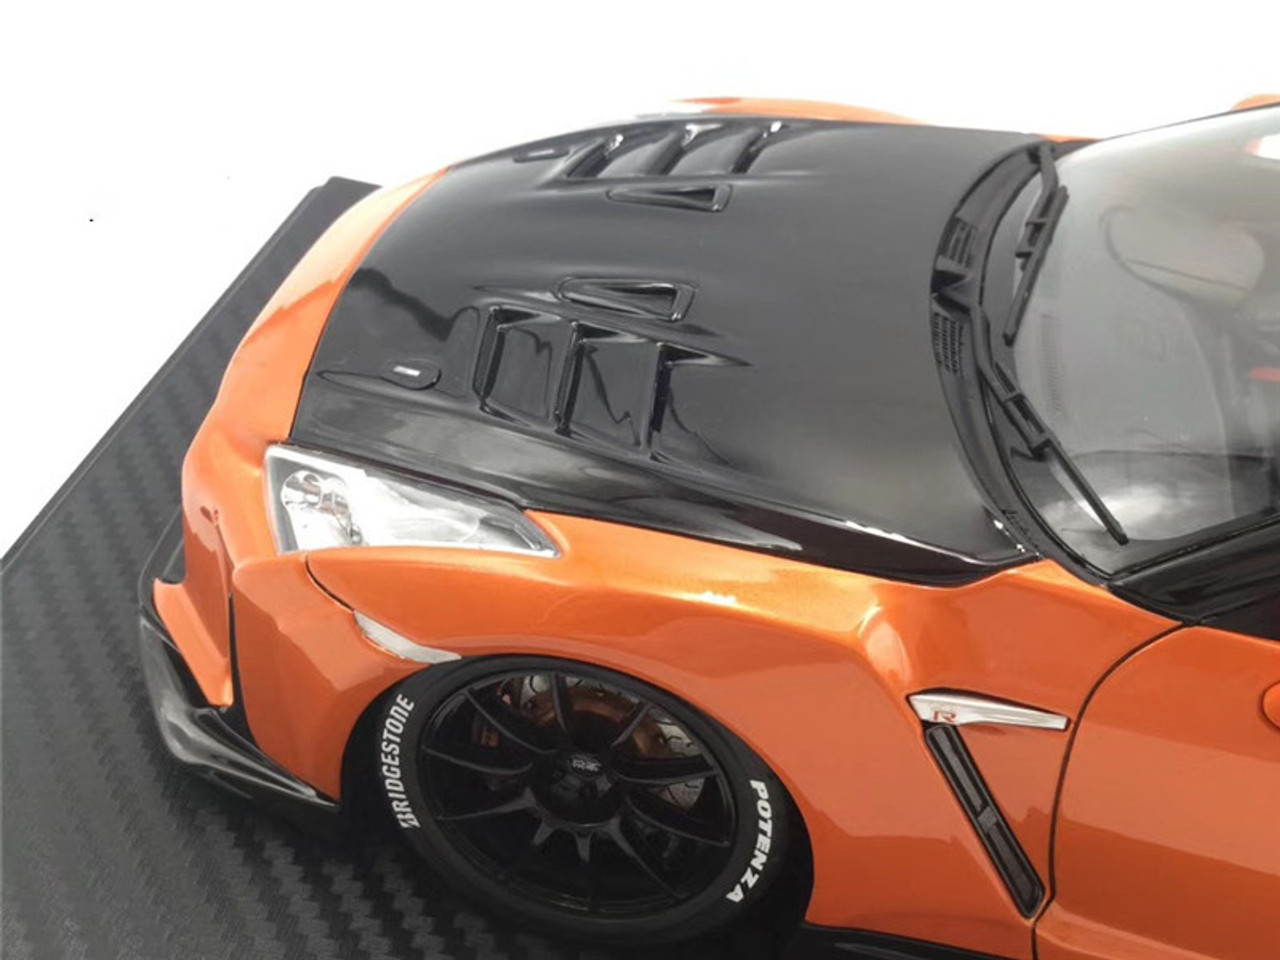 1/18 IG Ignition Model Nissan Top Secret GT-R GTR R35 (Orange) Resin Car Model